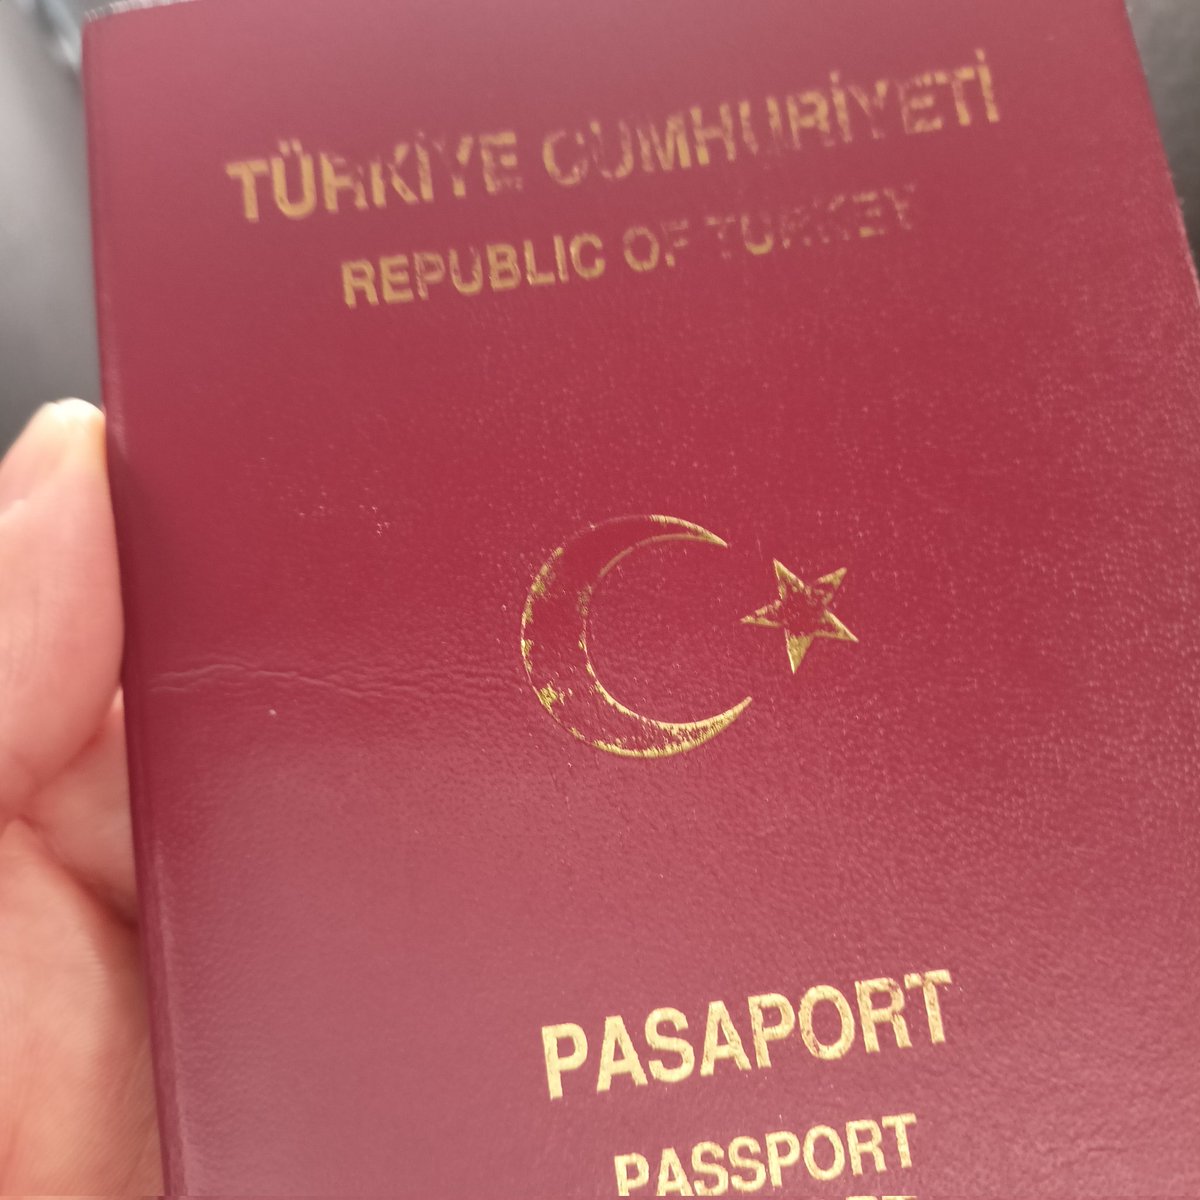 Bıgünde ben dert yanayım hep Türkiye'dekilermi yapacak Pasaport değiştirmeden geliyorum Bir ay önce randevu yaparken 110 euro idi. Bir ayda zam gelmiş 150 euro olmuş. Kimse çirkeflik yapmadı ödedik hesabı çıktık. Hayat sadece Türkiyede pahalı değil bilin istedim